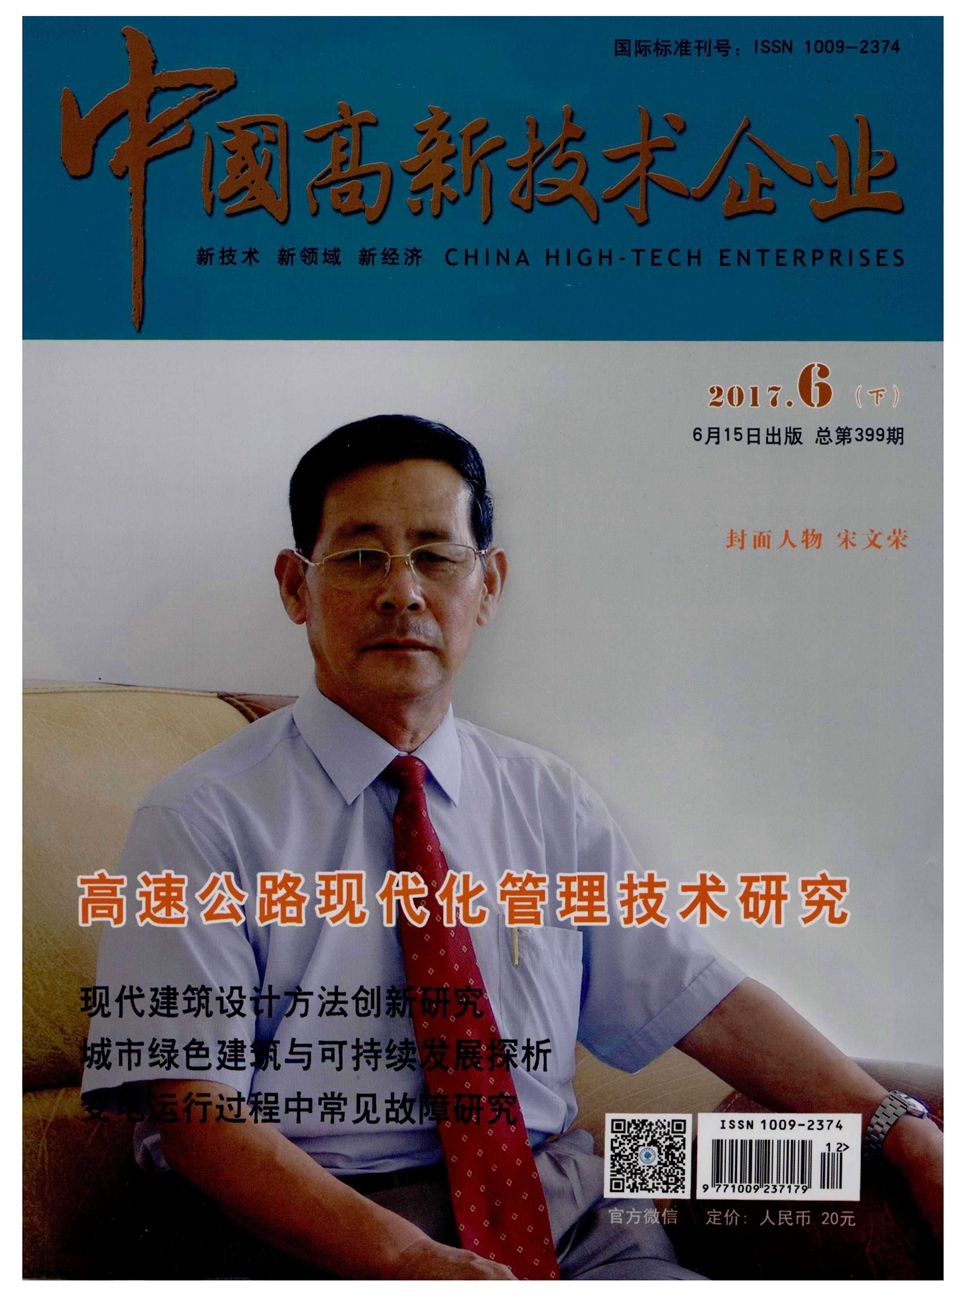 中国高新技术企业杂志社